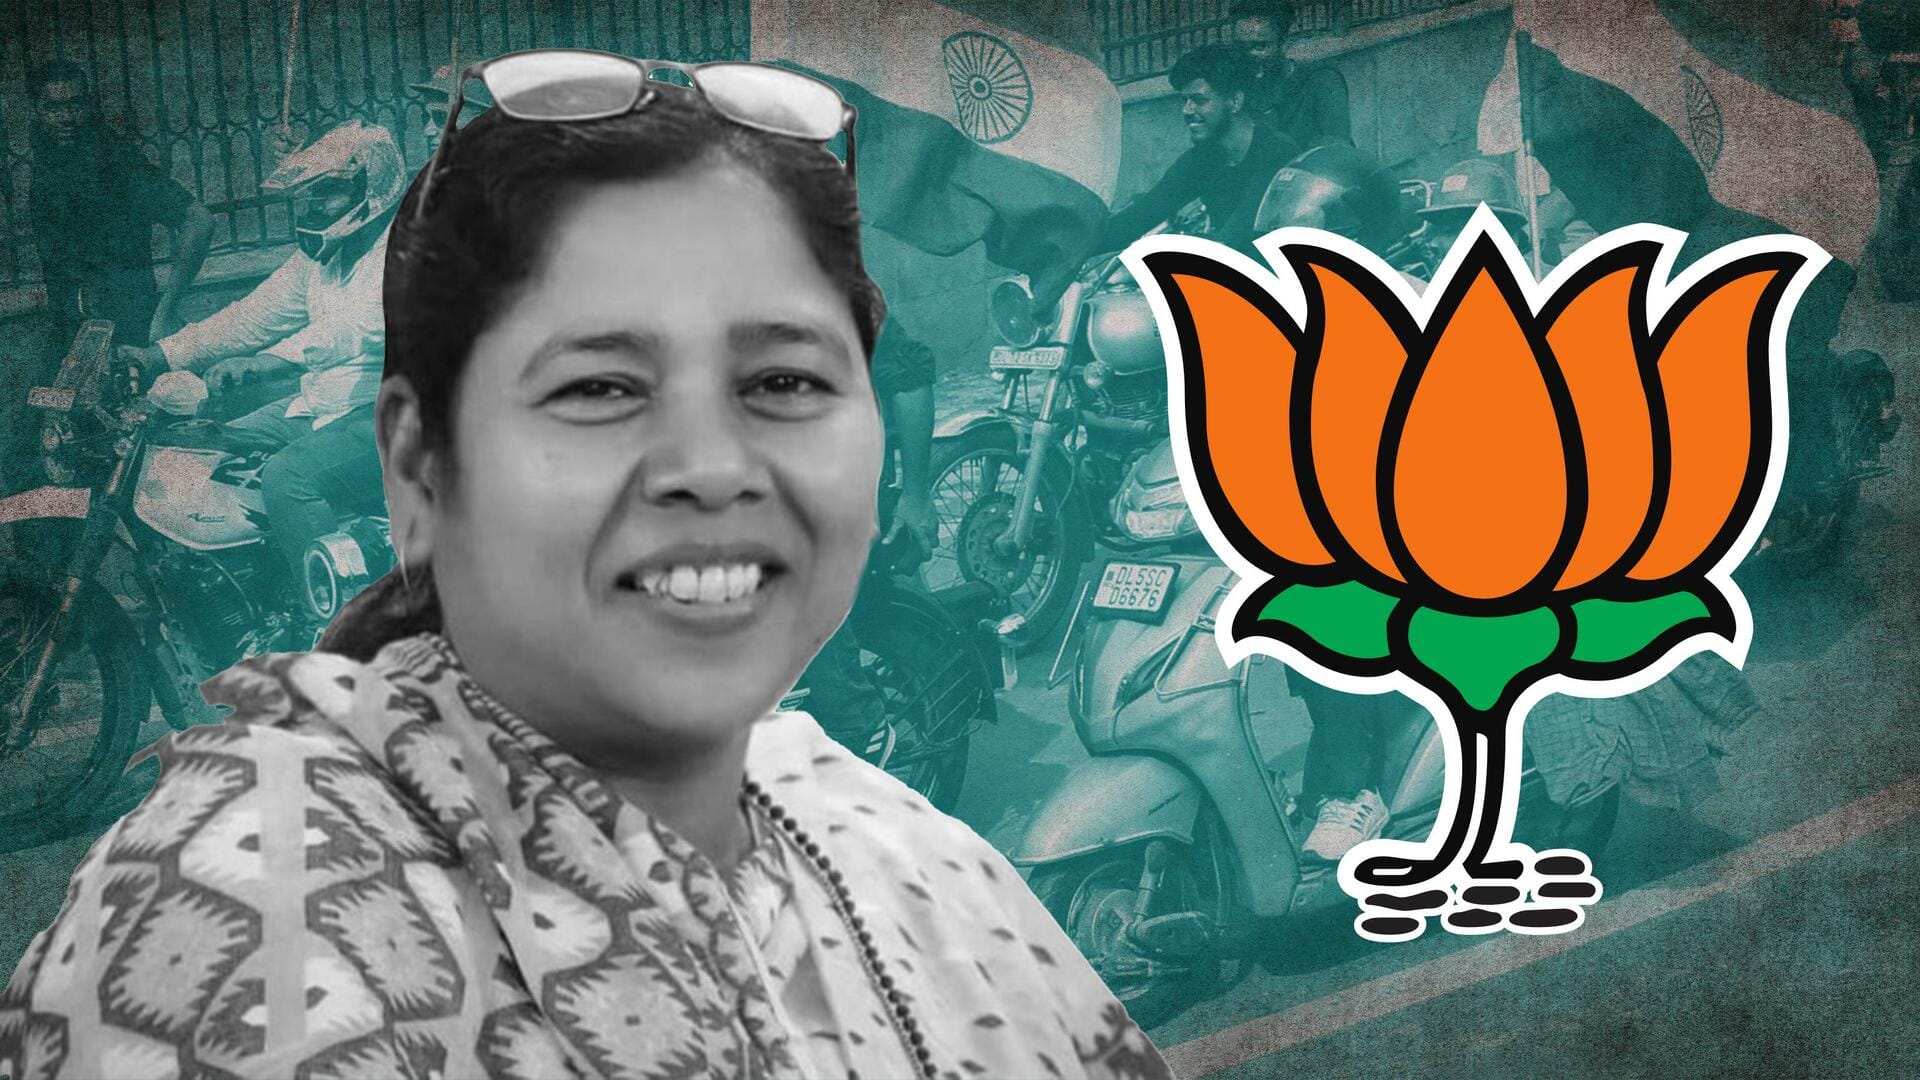 त्रिपुरा की पहली महिला मुख्यमंत्री बन सकती हैं प्रतिमा भौमिक, रेस में सबसे आगे